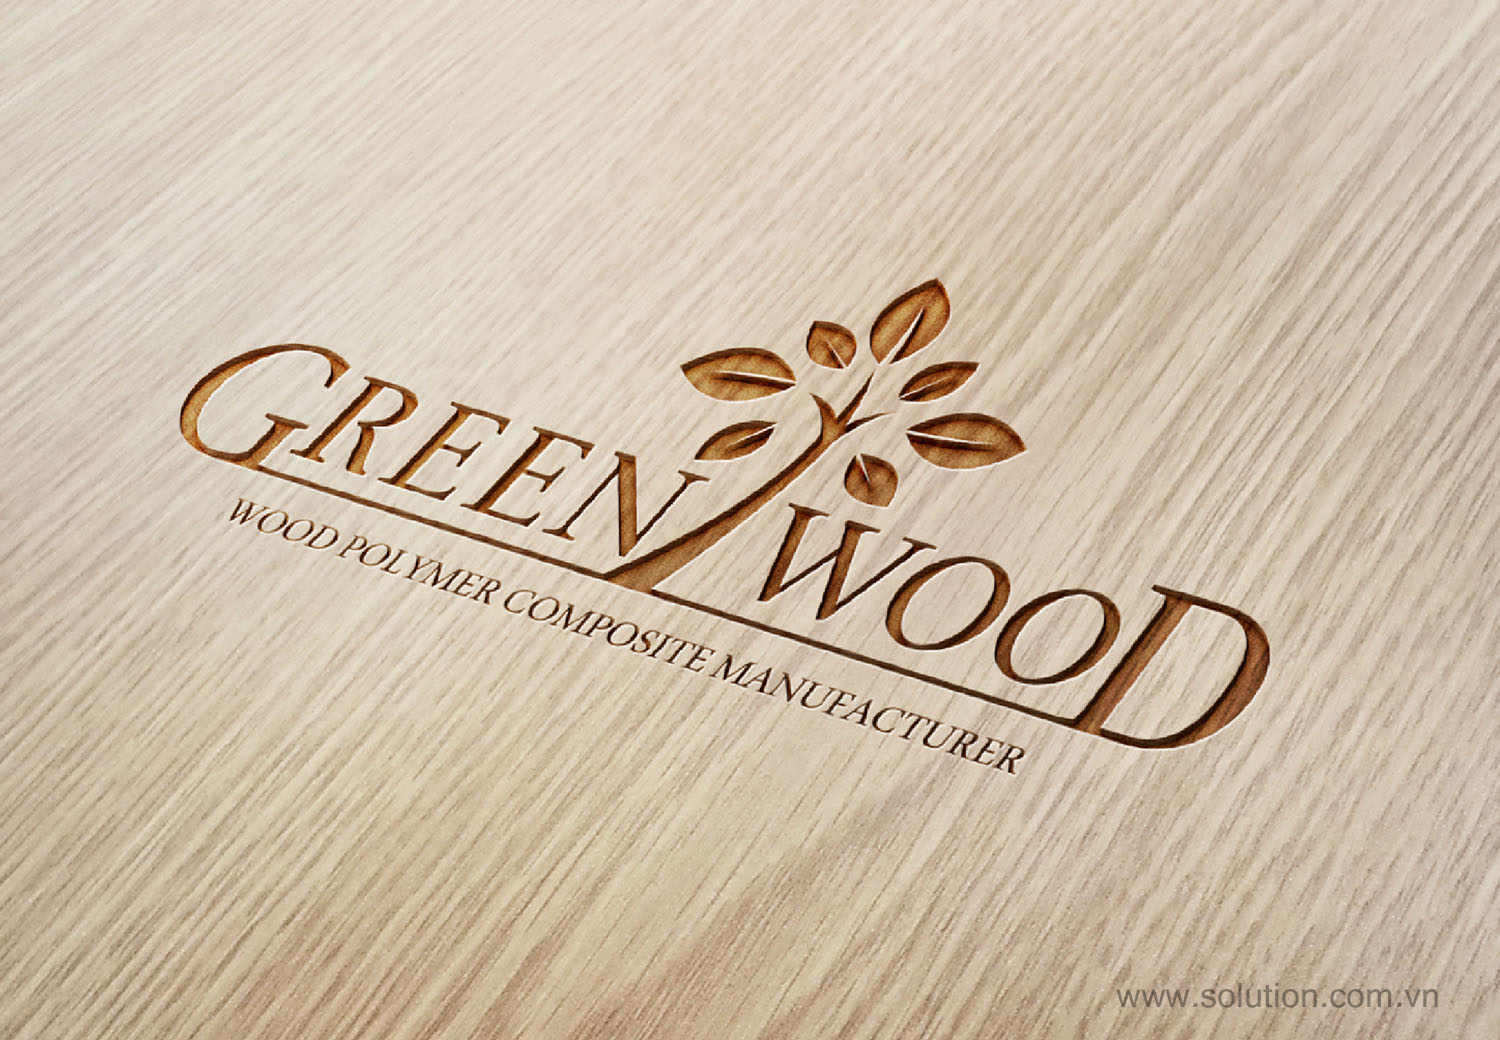 LOGO Công ty Green Wood